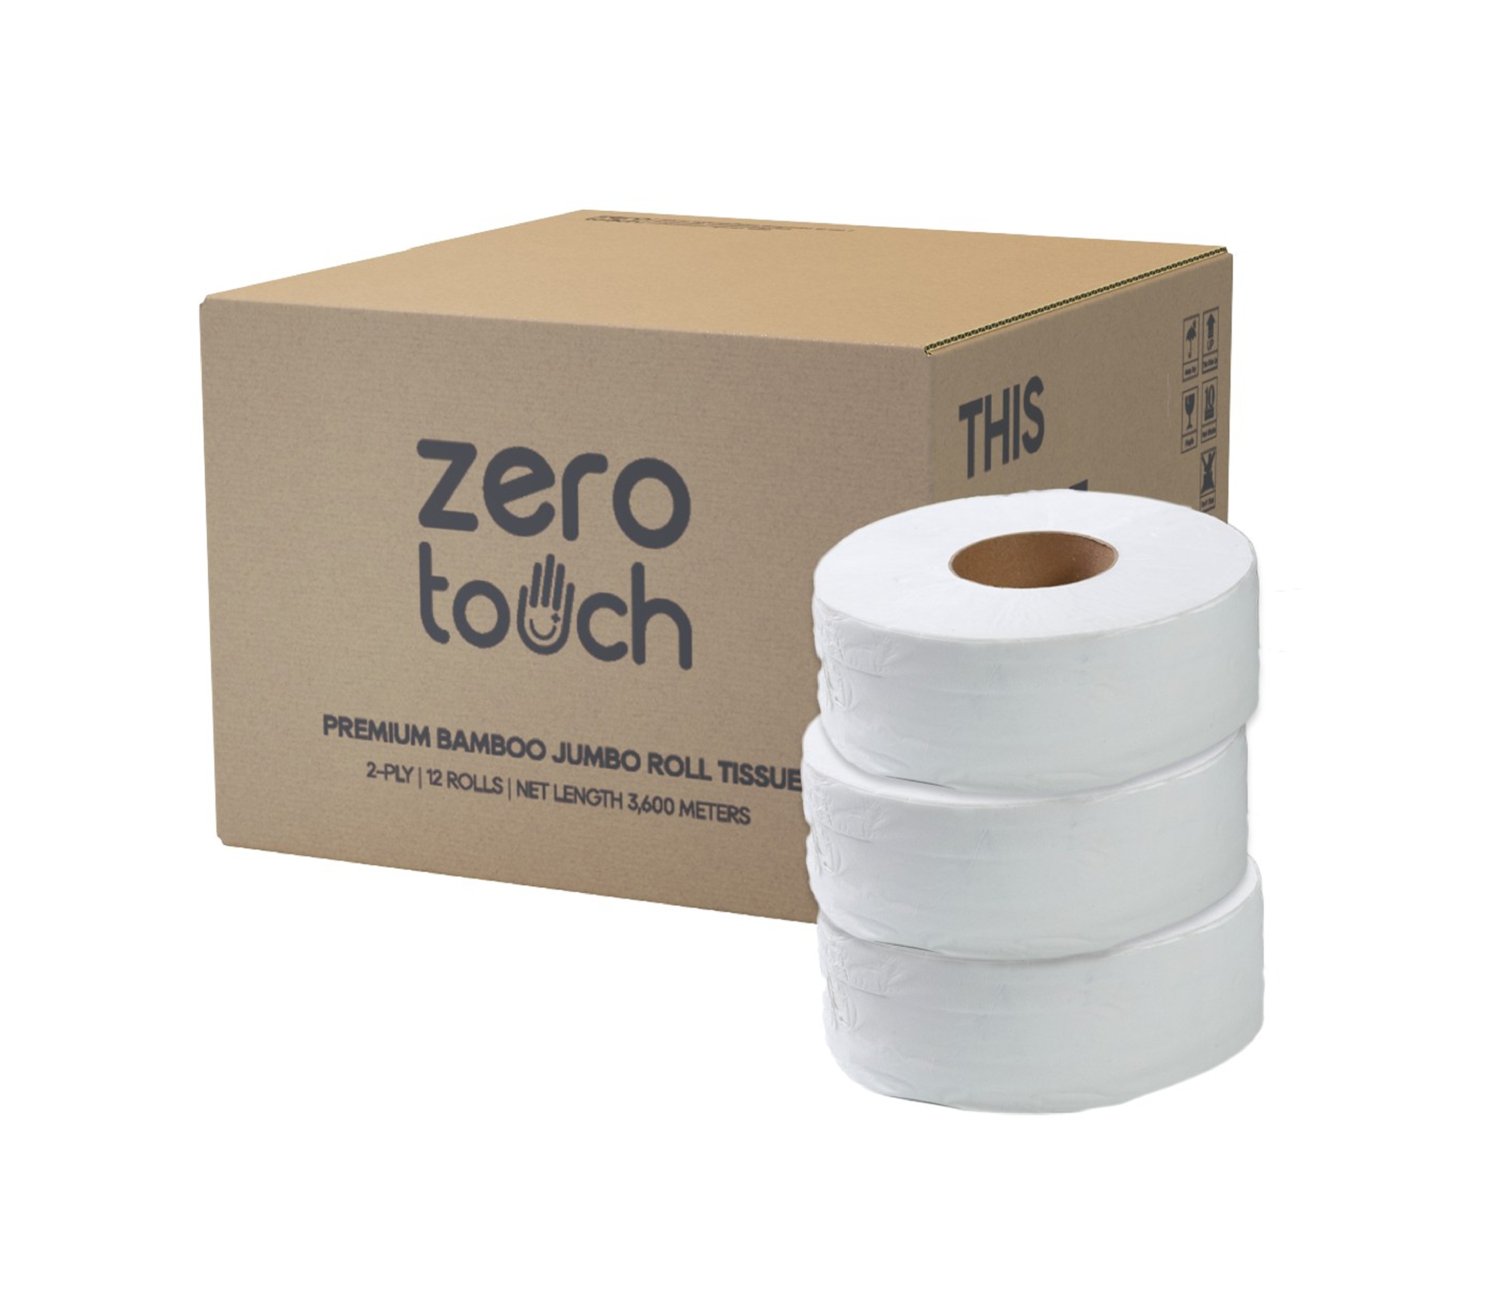 ZERO-TOUCH ทิชชู่เยื่อกระดาษบริสุทธิ์ 100% แบบม้วนใหญ่ ความหนา 1 ชั้น ยาว 600 เมตร